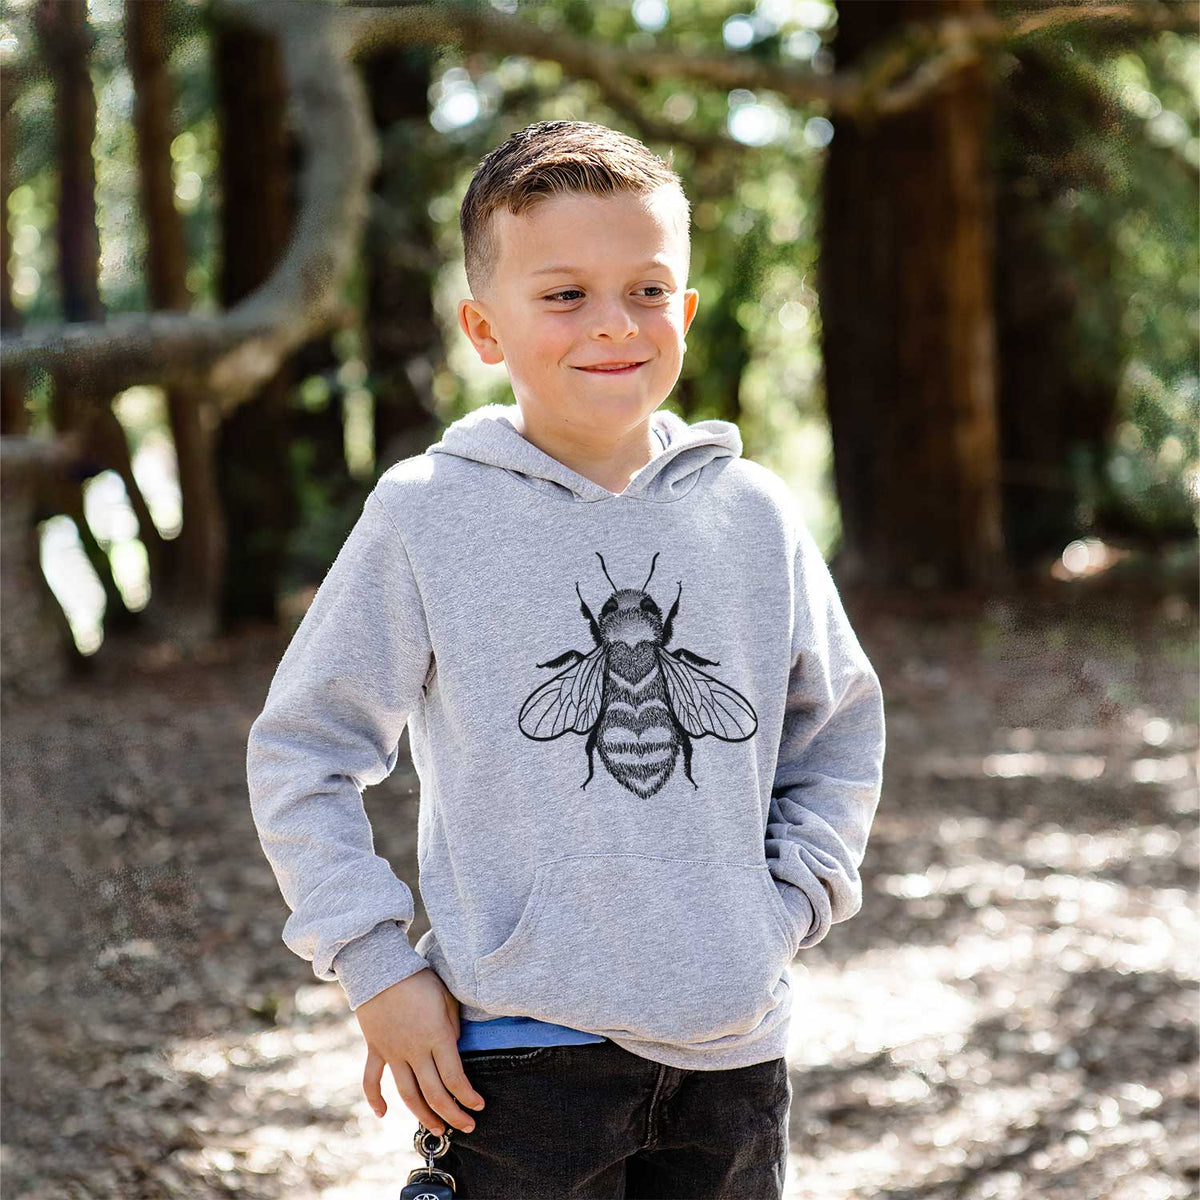 Bee Love - Youth Hoodie Sweatshirt